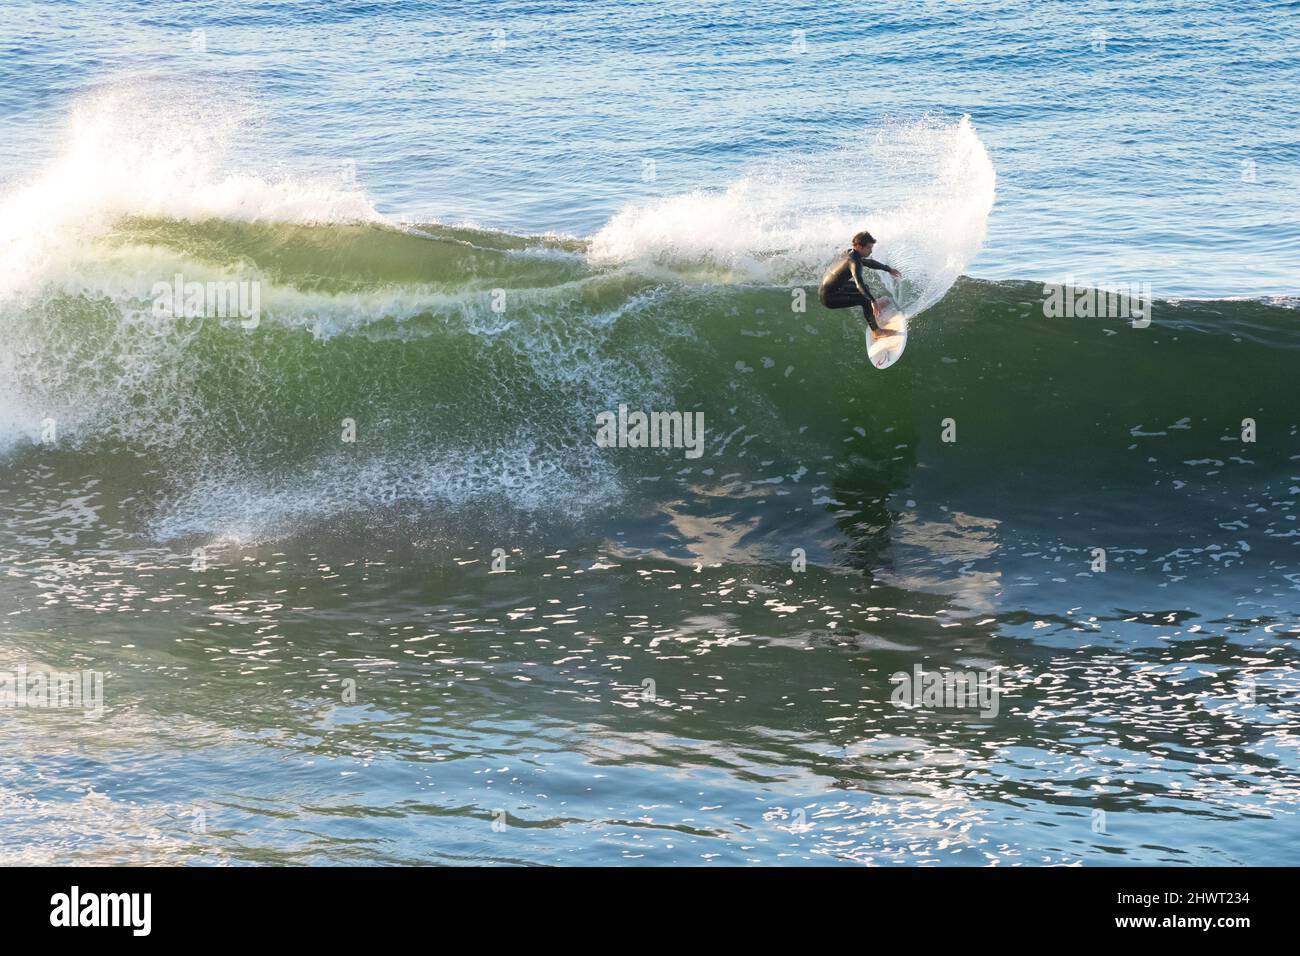 Pichilemu, région d'O'Higgins, Chili - Surfer à Punta de Lobos une plage de surf au sud de Pichilemu. Banque D'Images